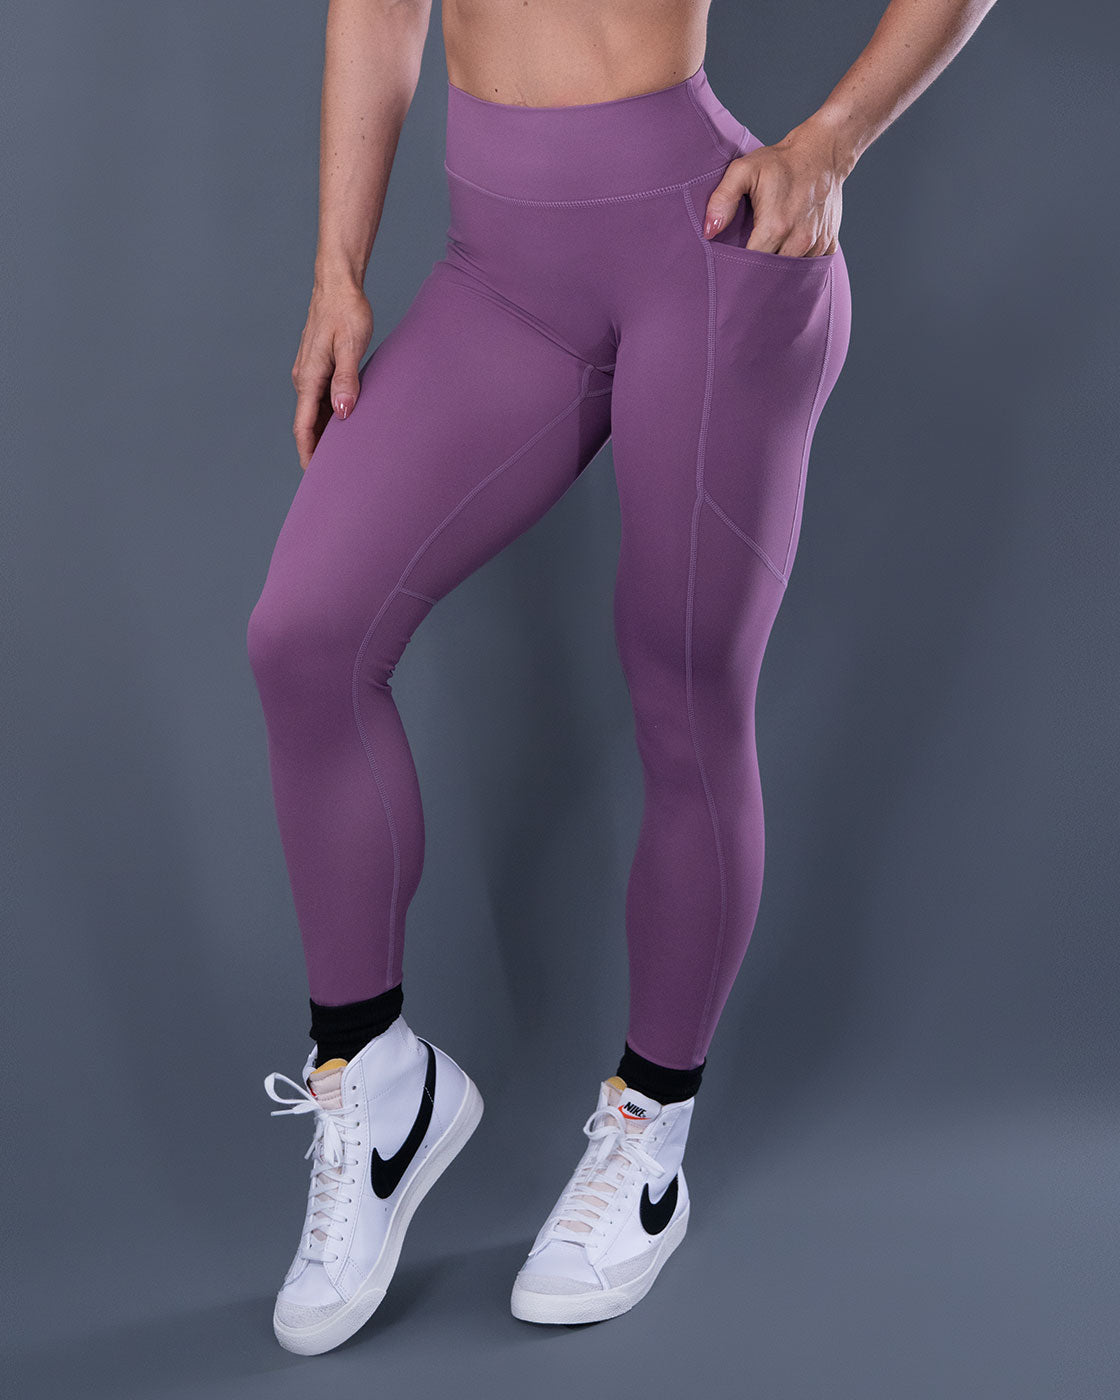 Lux leggings - Flawless Athlete